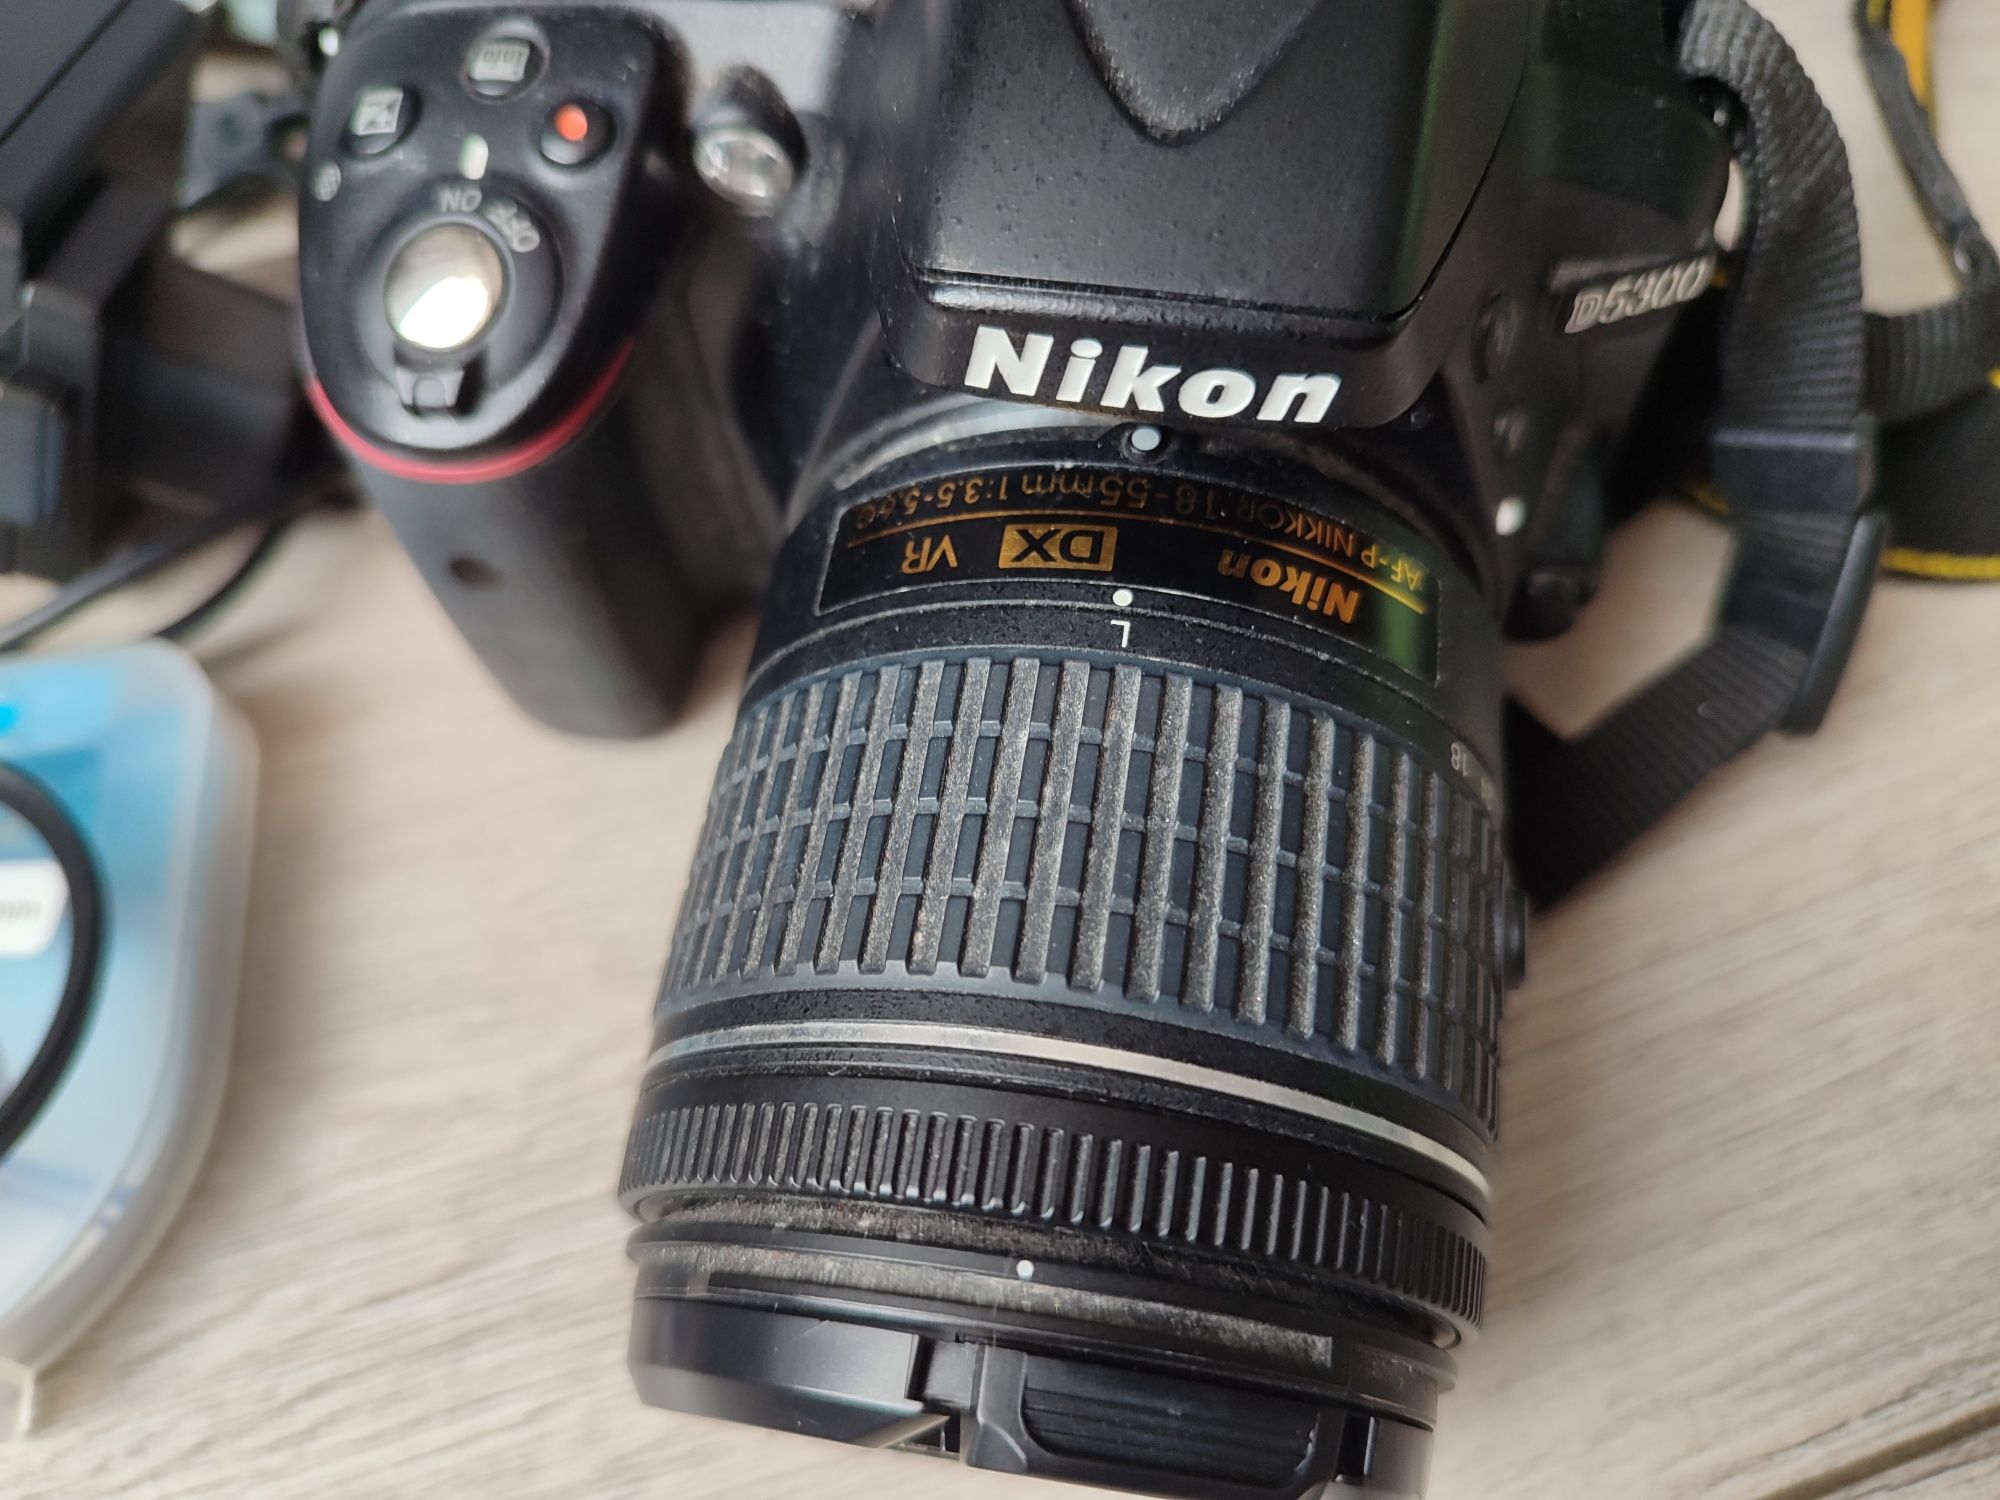 Aparat Nikon D5300 w zestawie